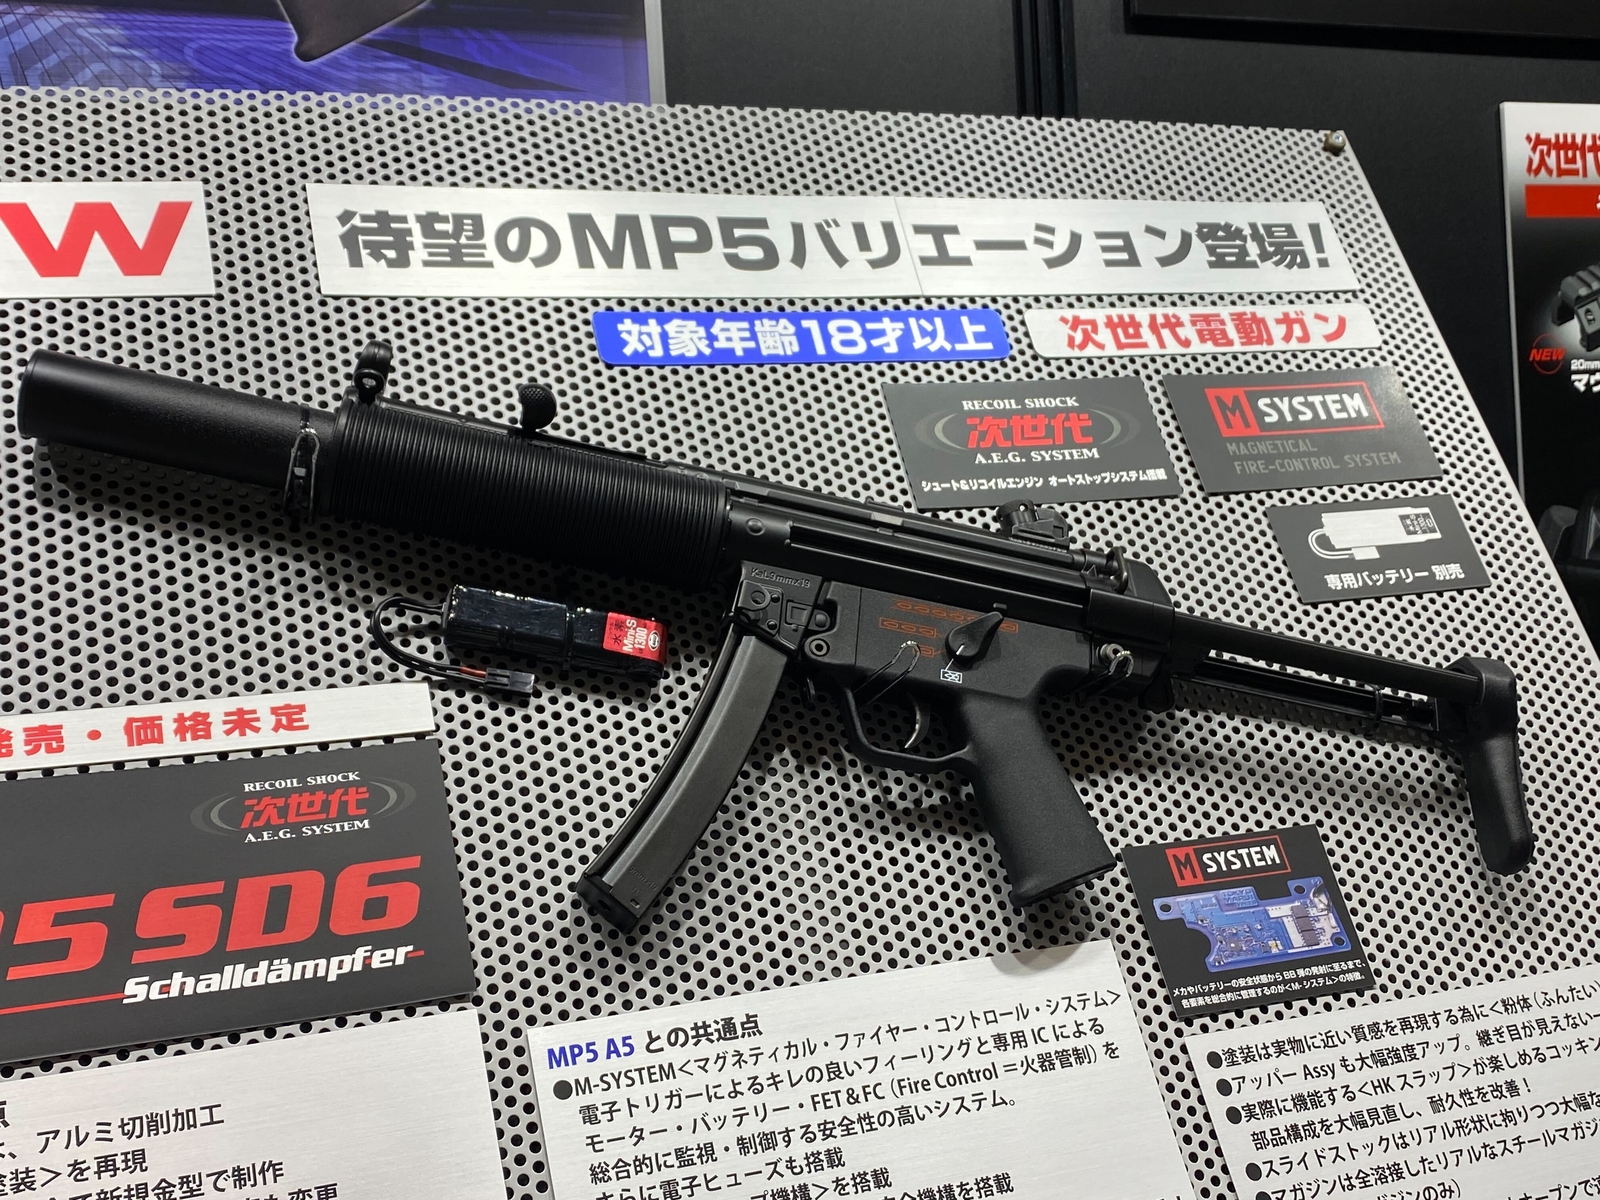 静岡ホビーショー】東京マルイ、次世代電動ガン「MP5 SD6」展示